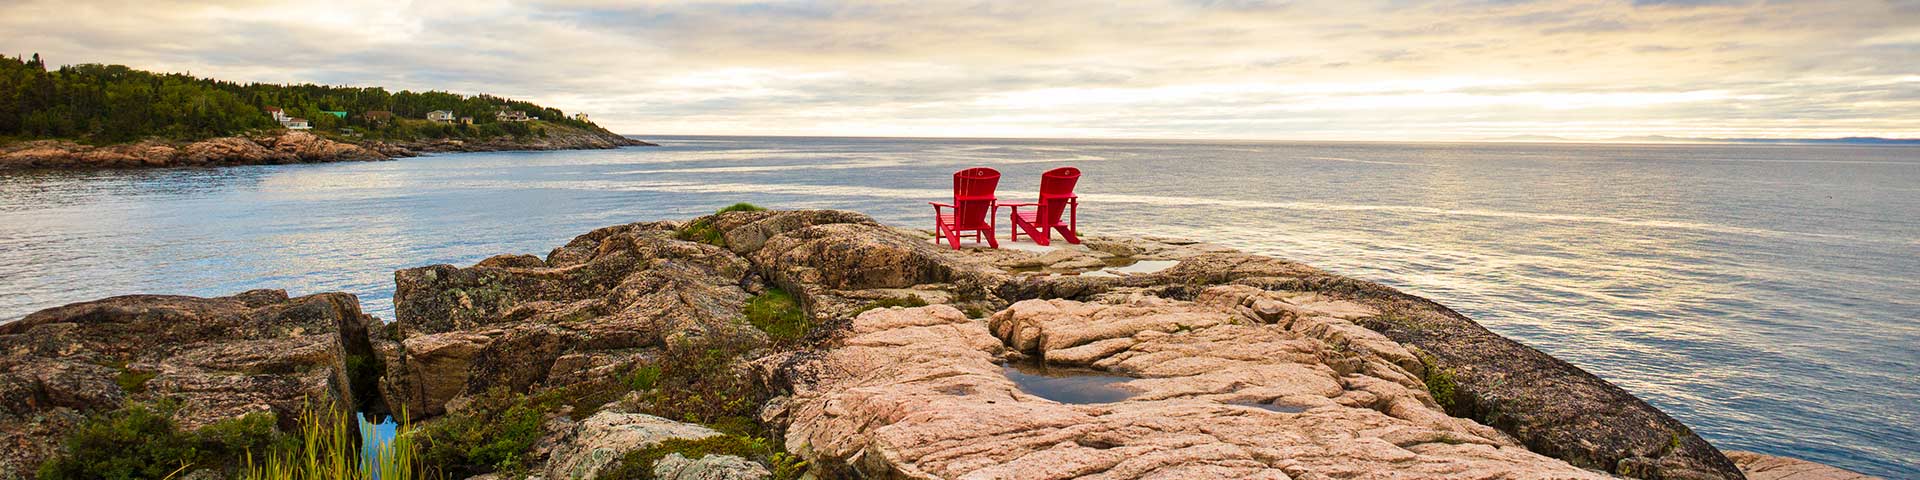 Deux chaises rouges sur un affleurement rocheux font face à l’océan dans le parc marin du Saguenay-Saint-Laurent, au Québec.